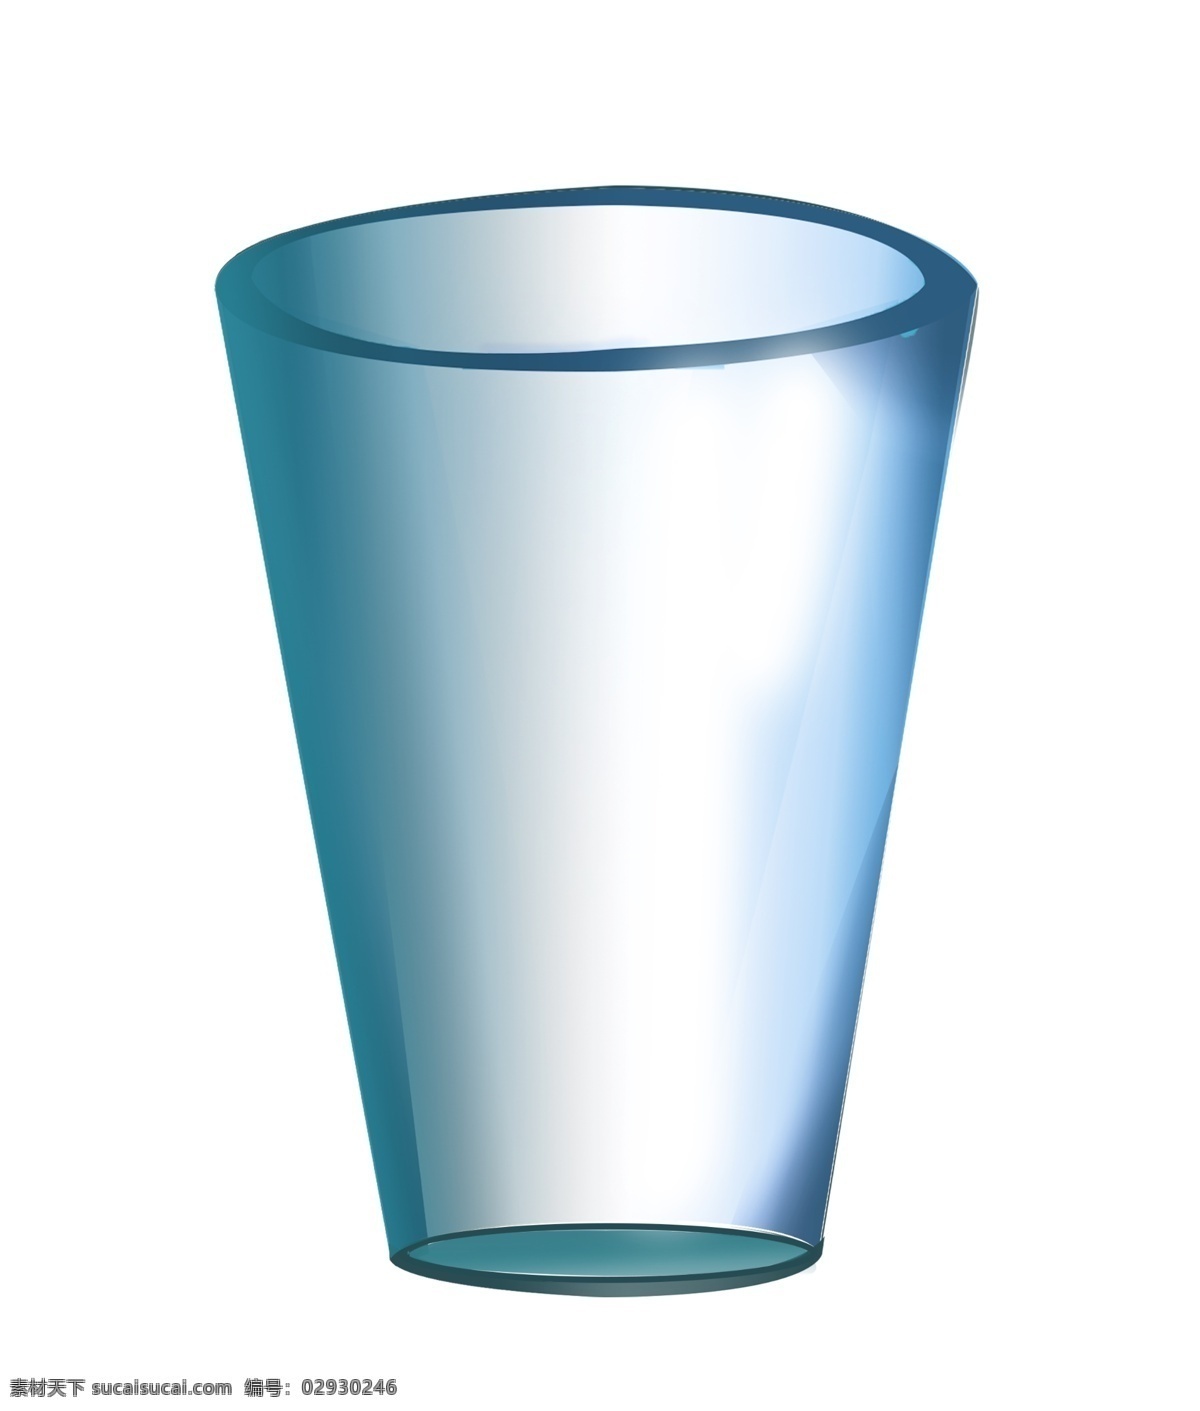 明亮 立体 杯子 插画 蓝色杯子 圆形杯子 明亮的杯子 可爱的杯子 美丽的杯子 精致的杯子 杯子设计